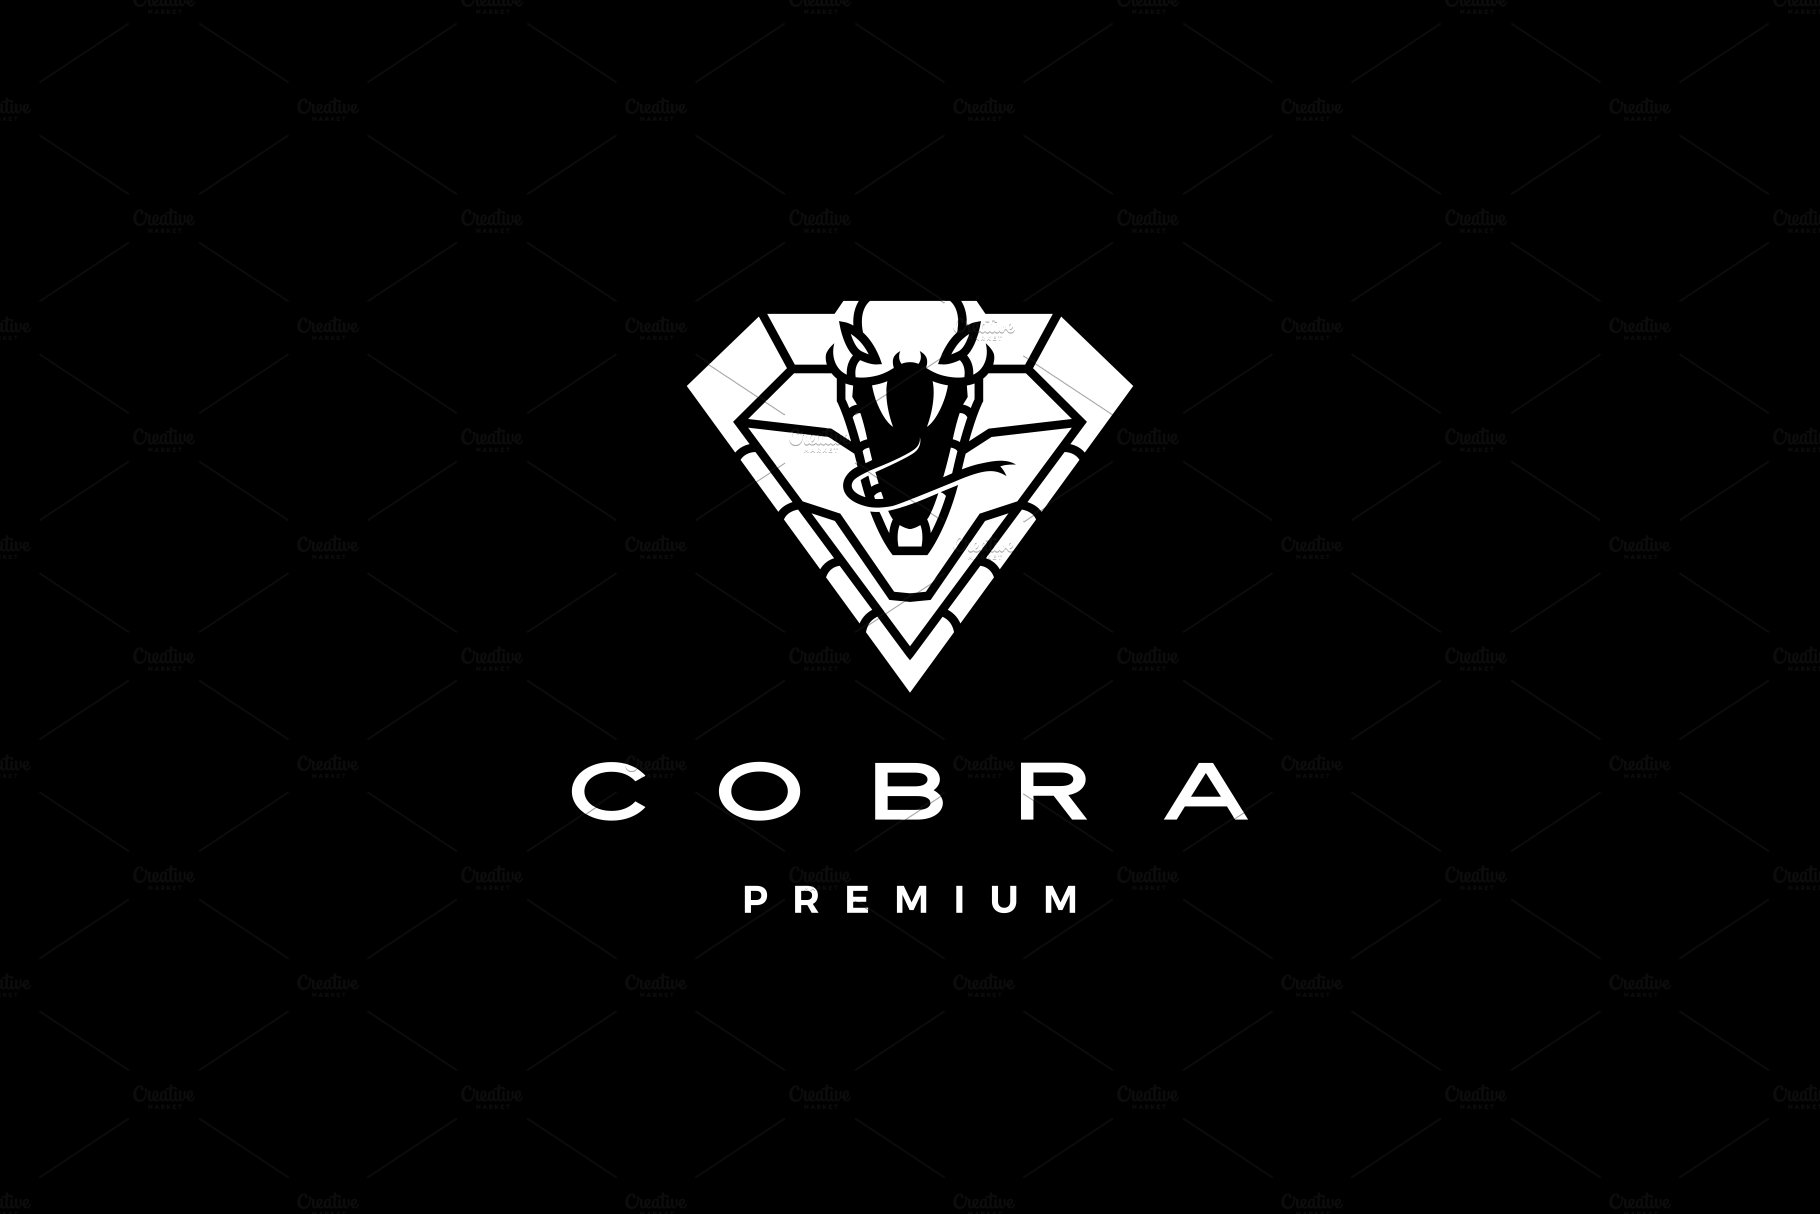 cobra logo vector icon illustration cover image.